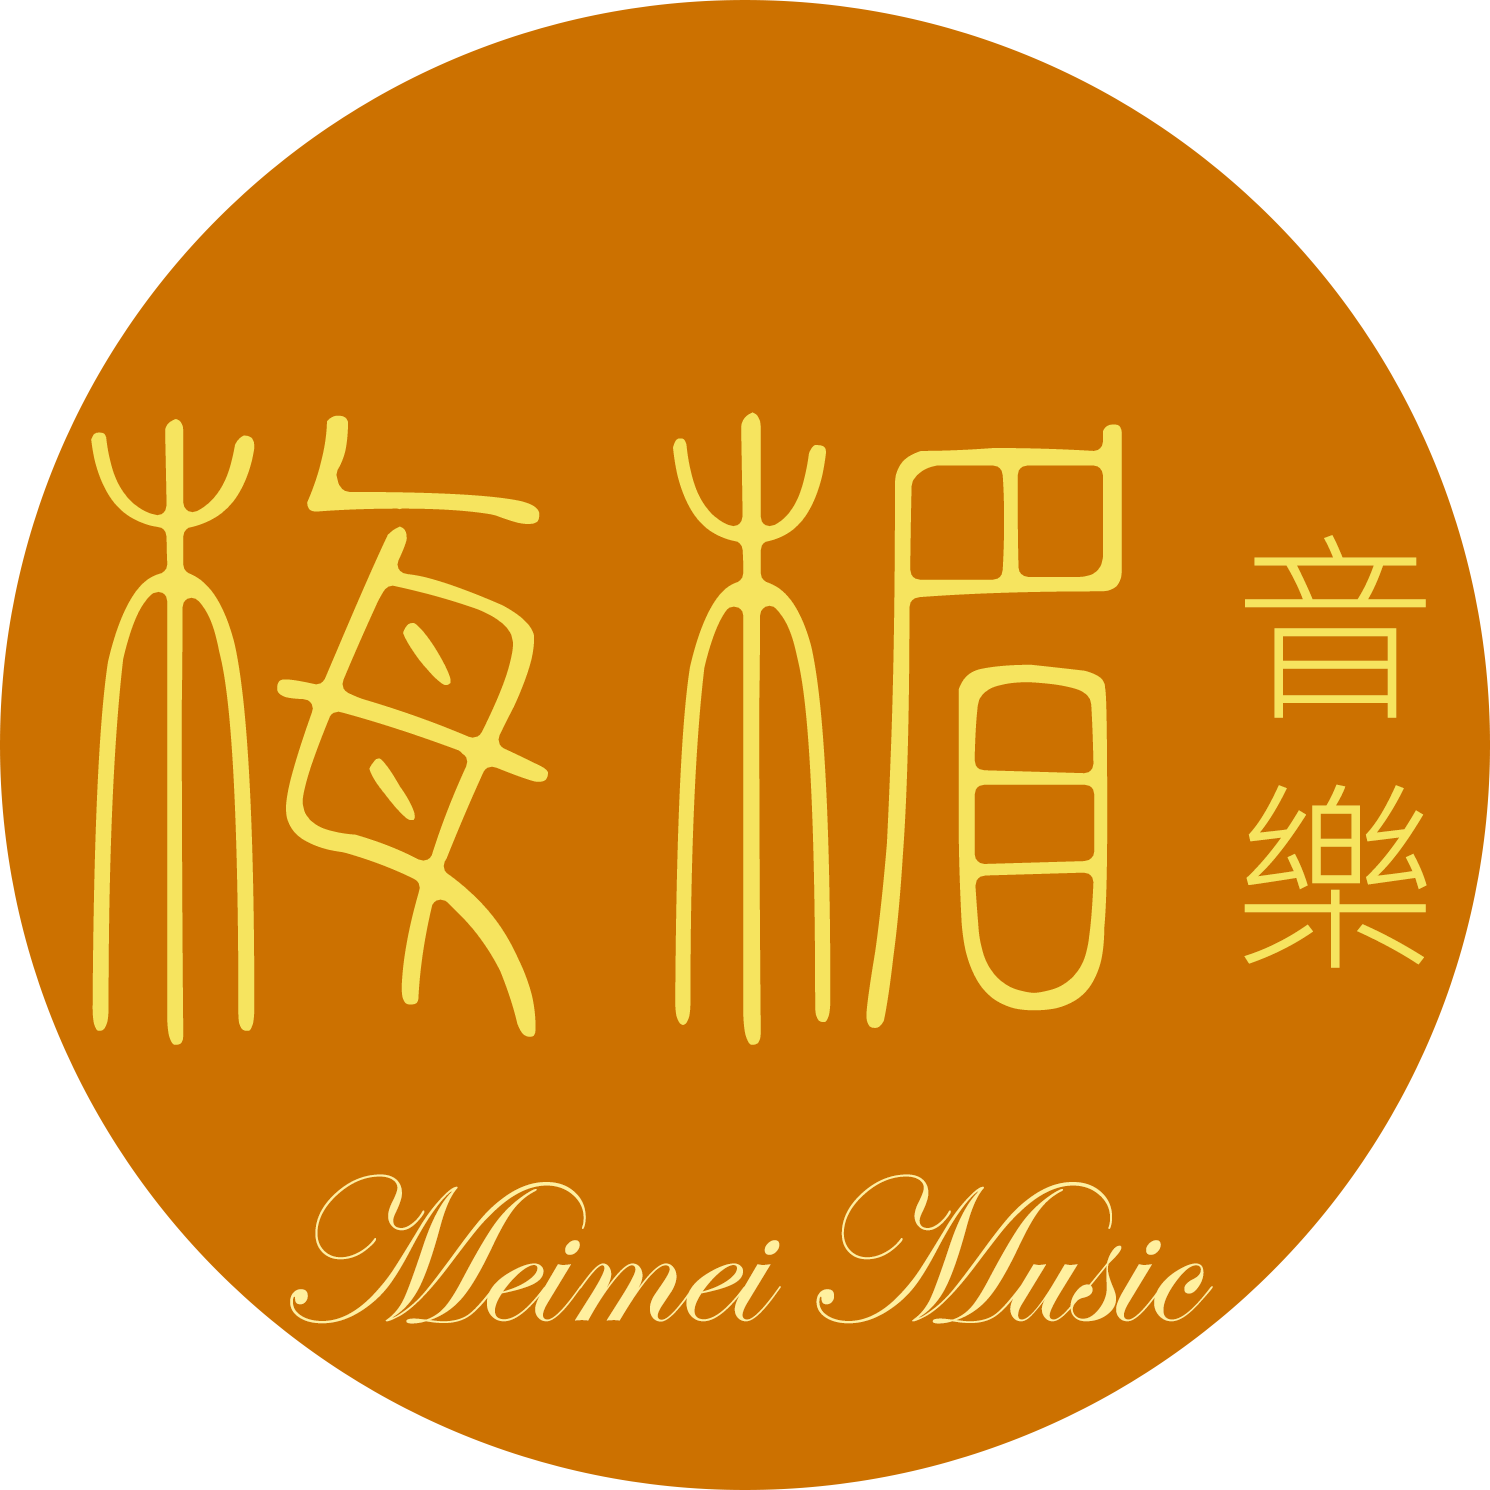 Meimei Music